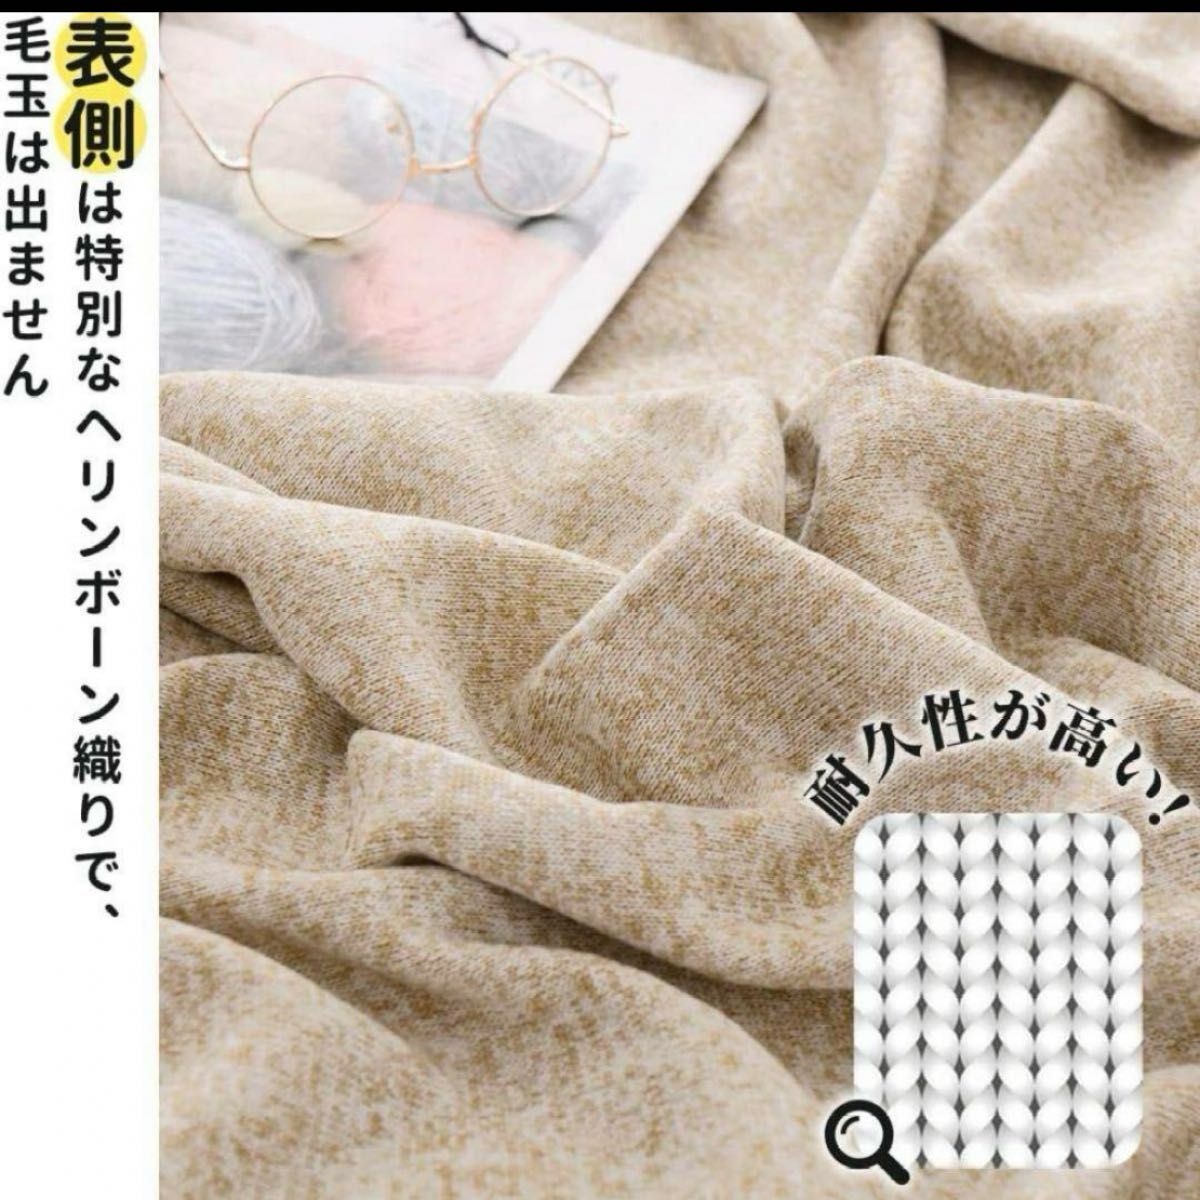 KAWAHOME オリジナル ニット タオルケットミックスベージュ230×200cm クイーン/キングサイズ ミックスベージュ